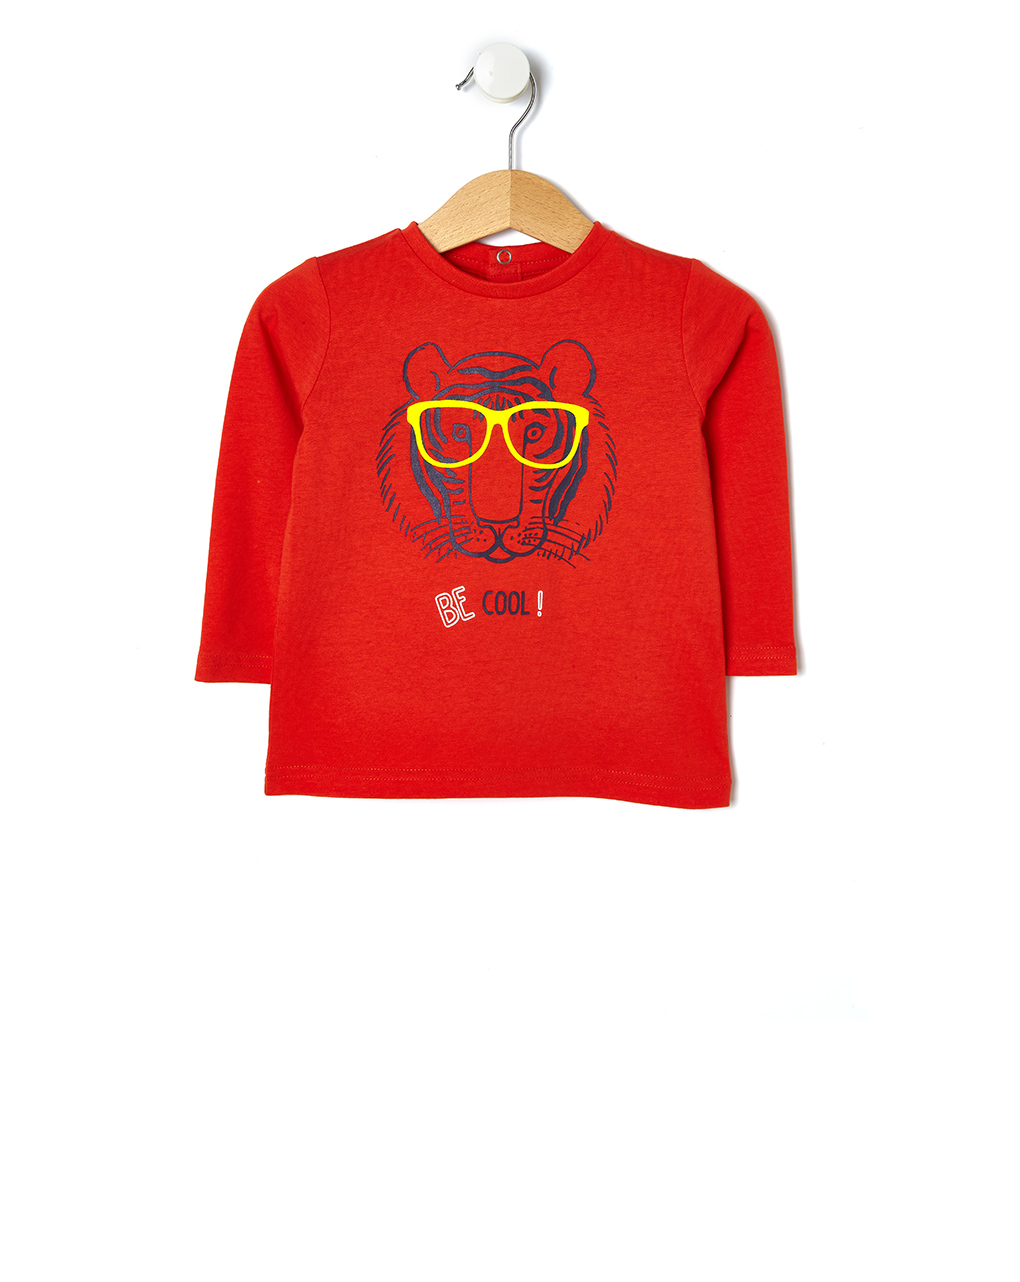 μπλούζα κόκκινη με λιοντάρι για αγόρι - Prénatal